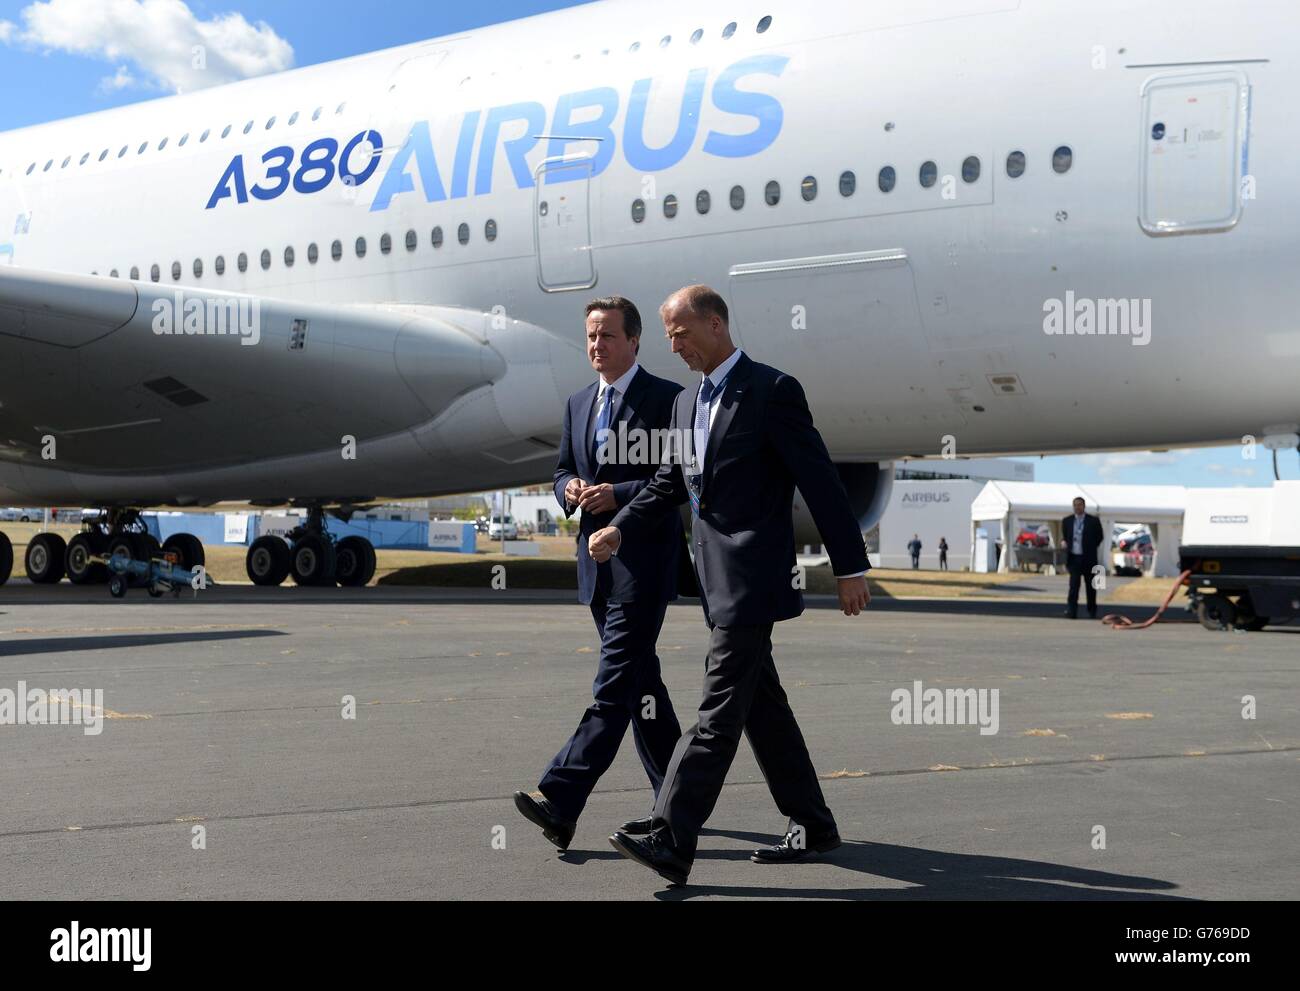 El primer ministro David Cameron (izquierda) y Tom Enders, el jefe ejecutivo del Grupo Airbus, pasan por delante de un Airbus A380 en su camino a inspeccionar el nuevo Airbus A350durante una visita al Salón aéreo de Farnborough 2014 en Hampshire. Foto de stock